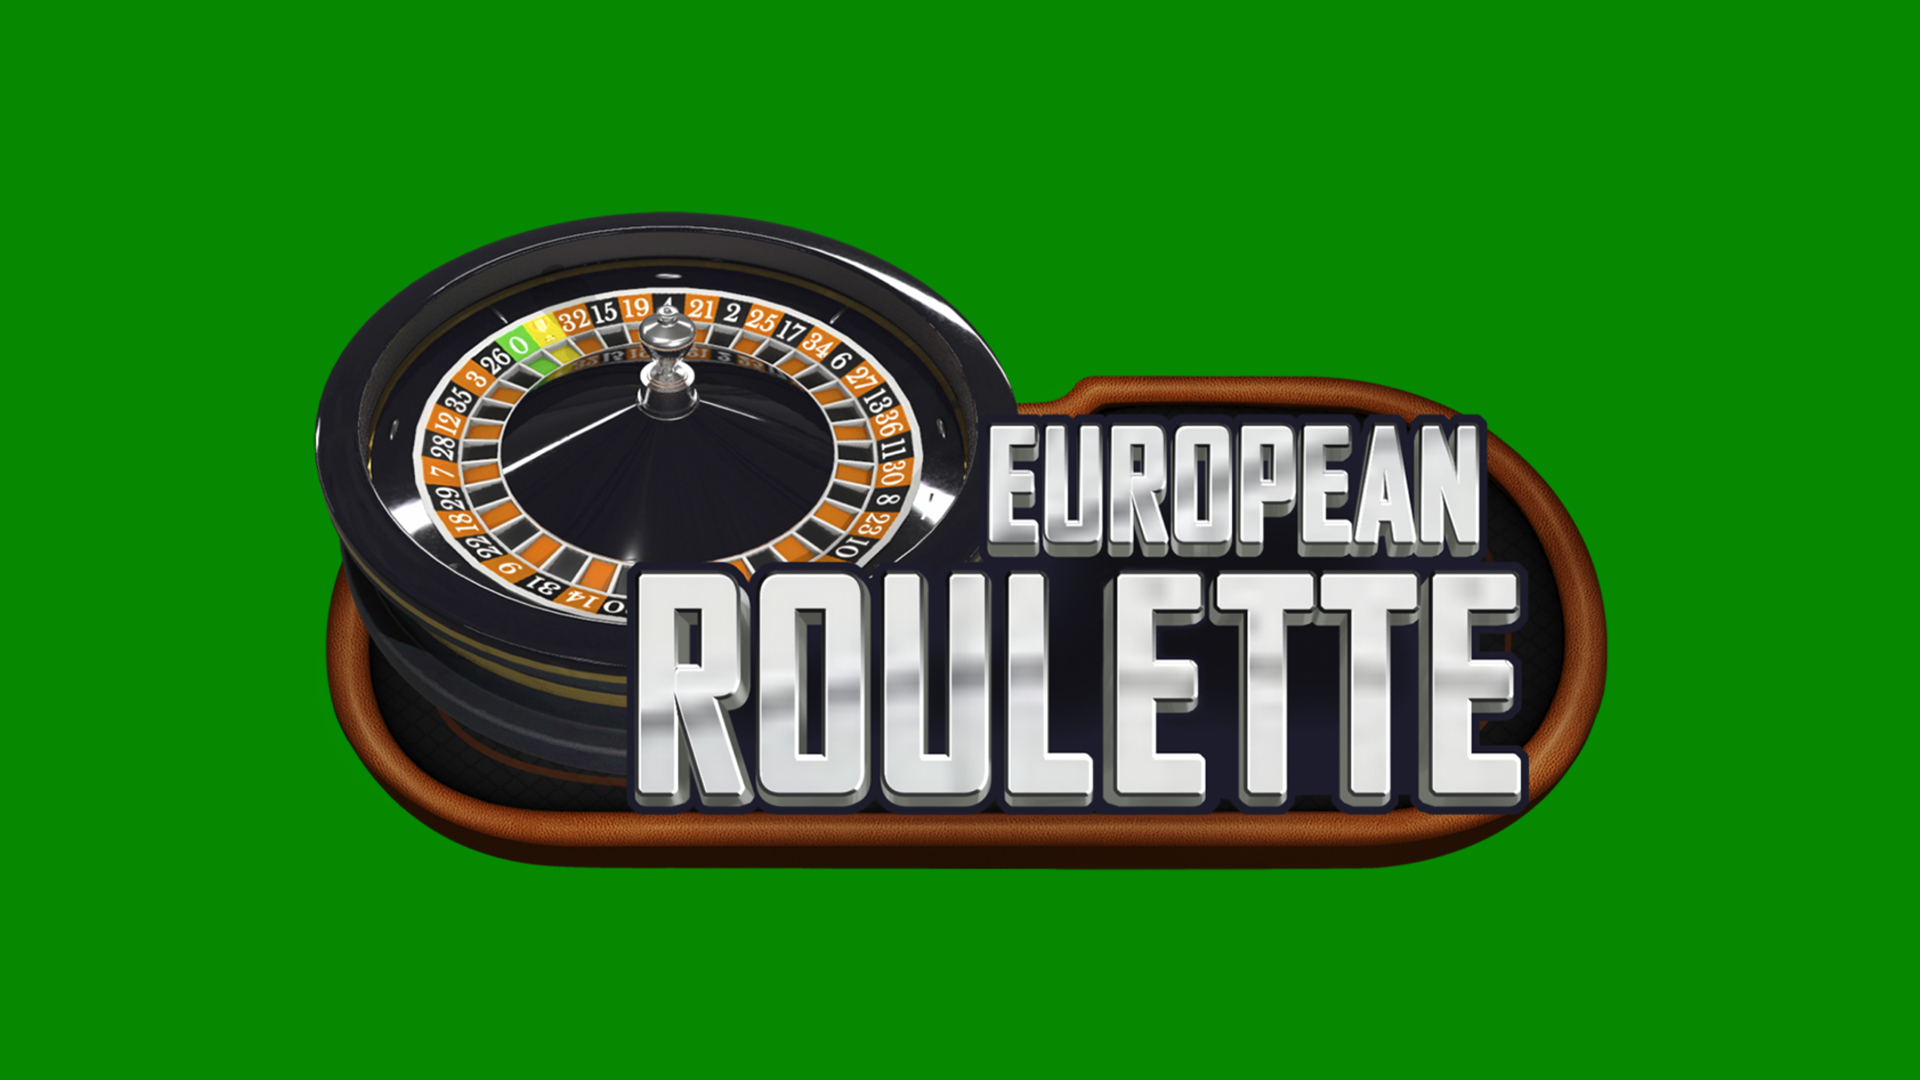 Roulette européenne